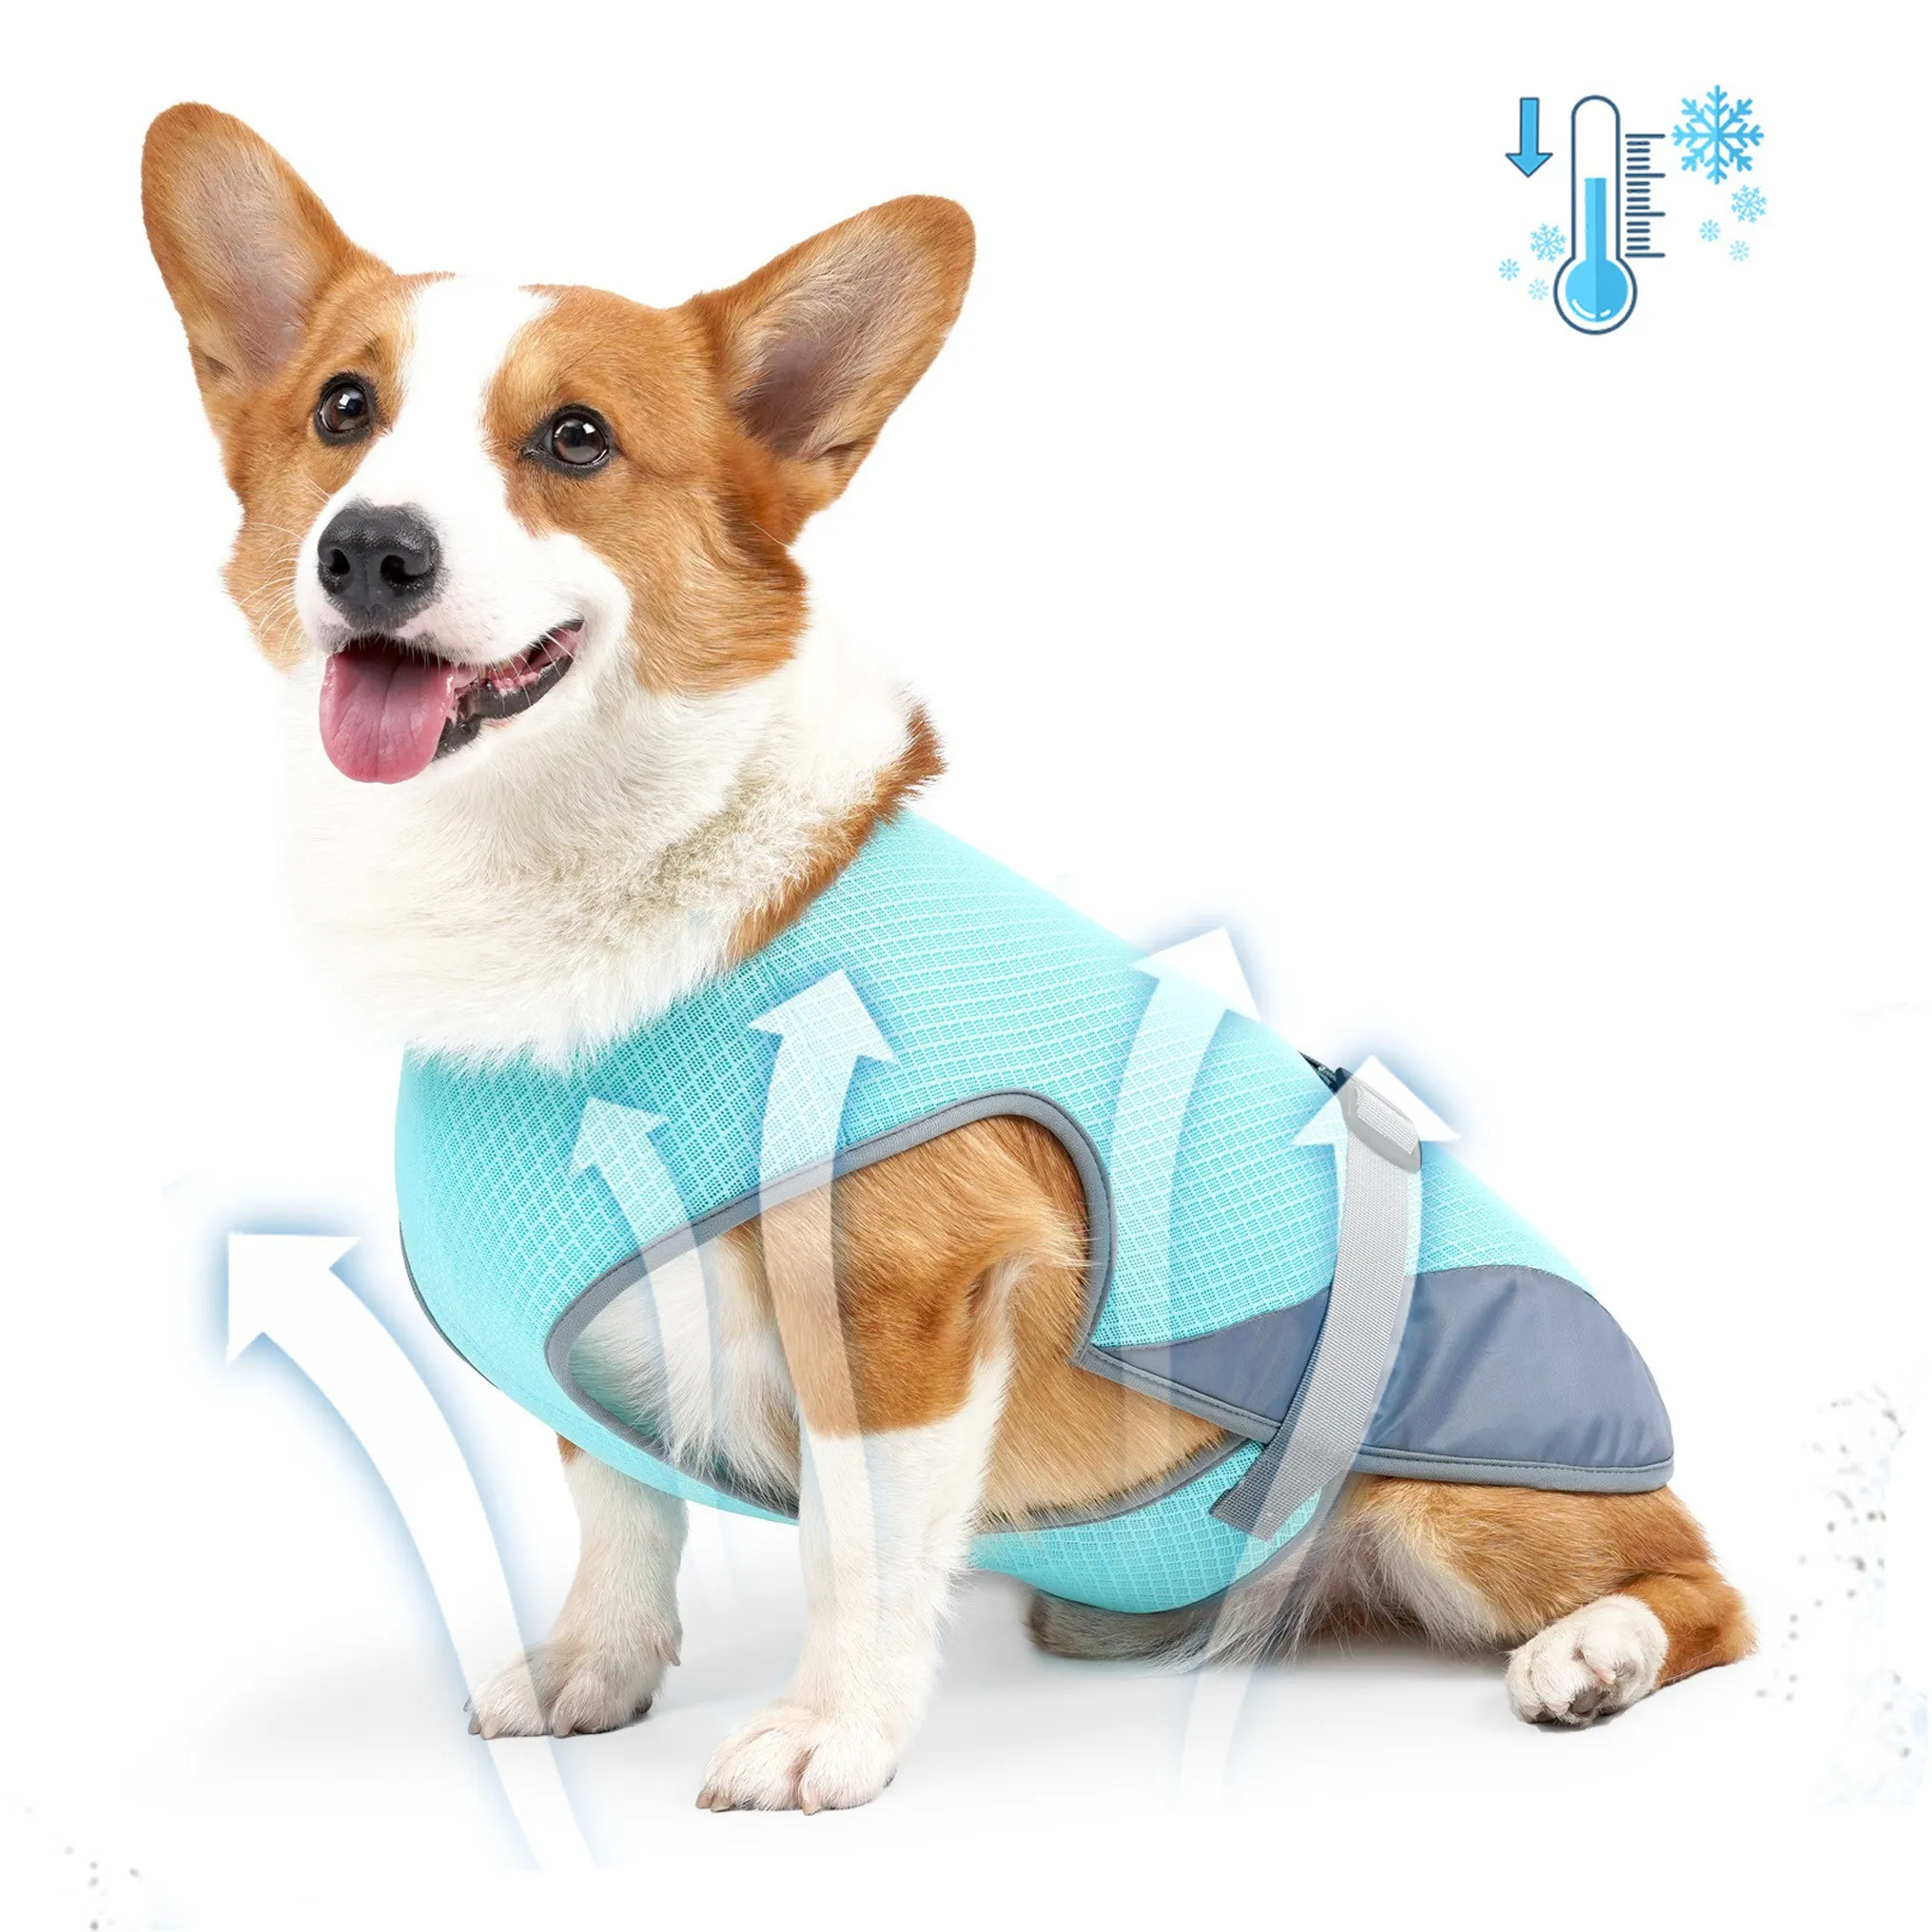 مصنع الجملة الصيف الكلب ملابس تسخير التبريد للكلاب معطف قابل للتعديل الإفراج السريع الملابس